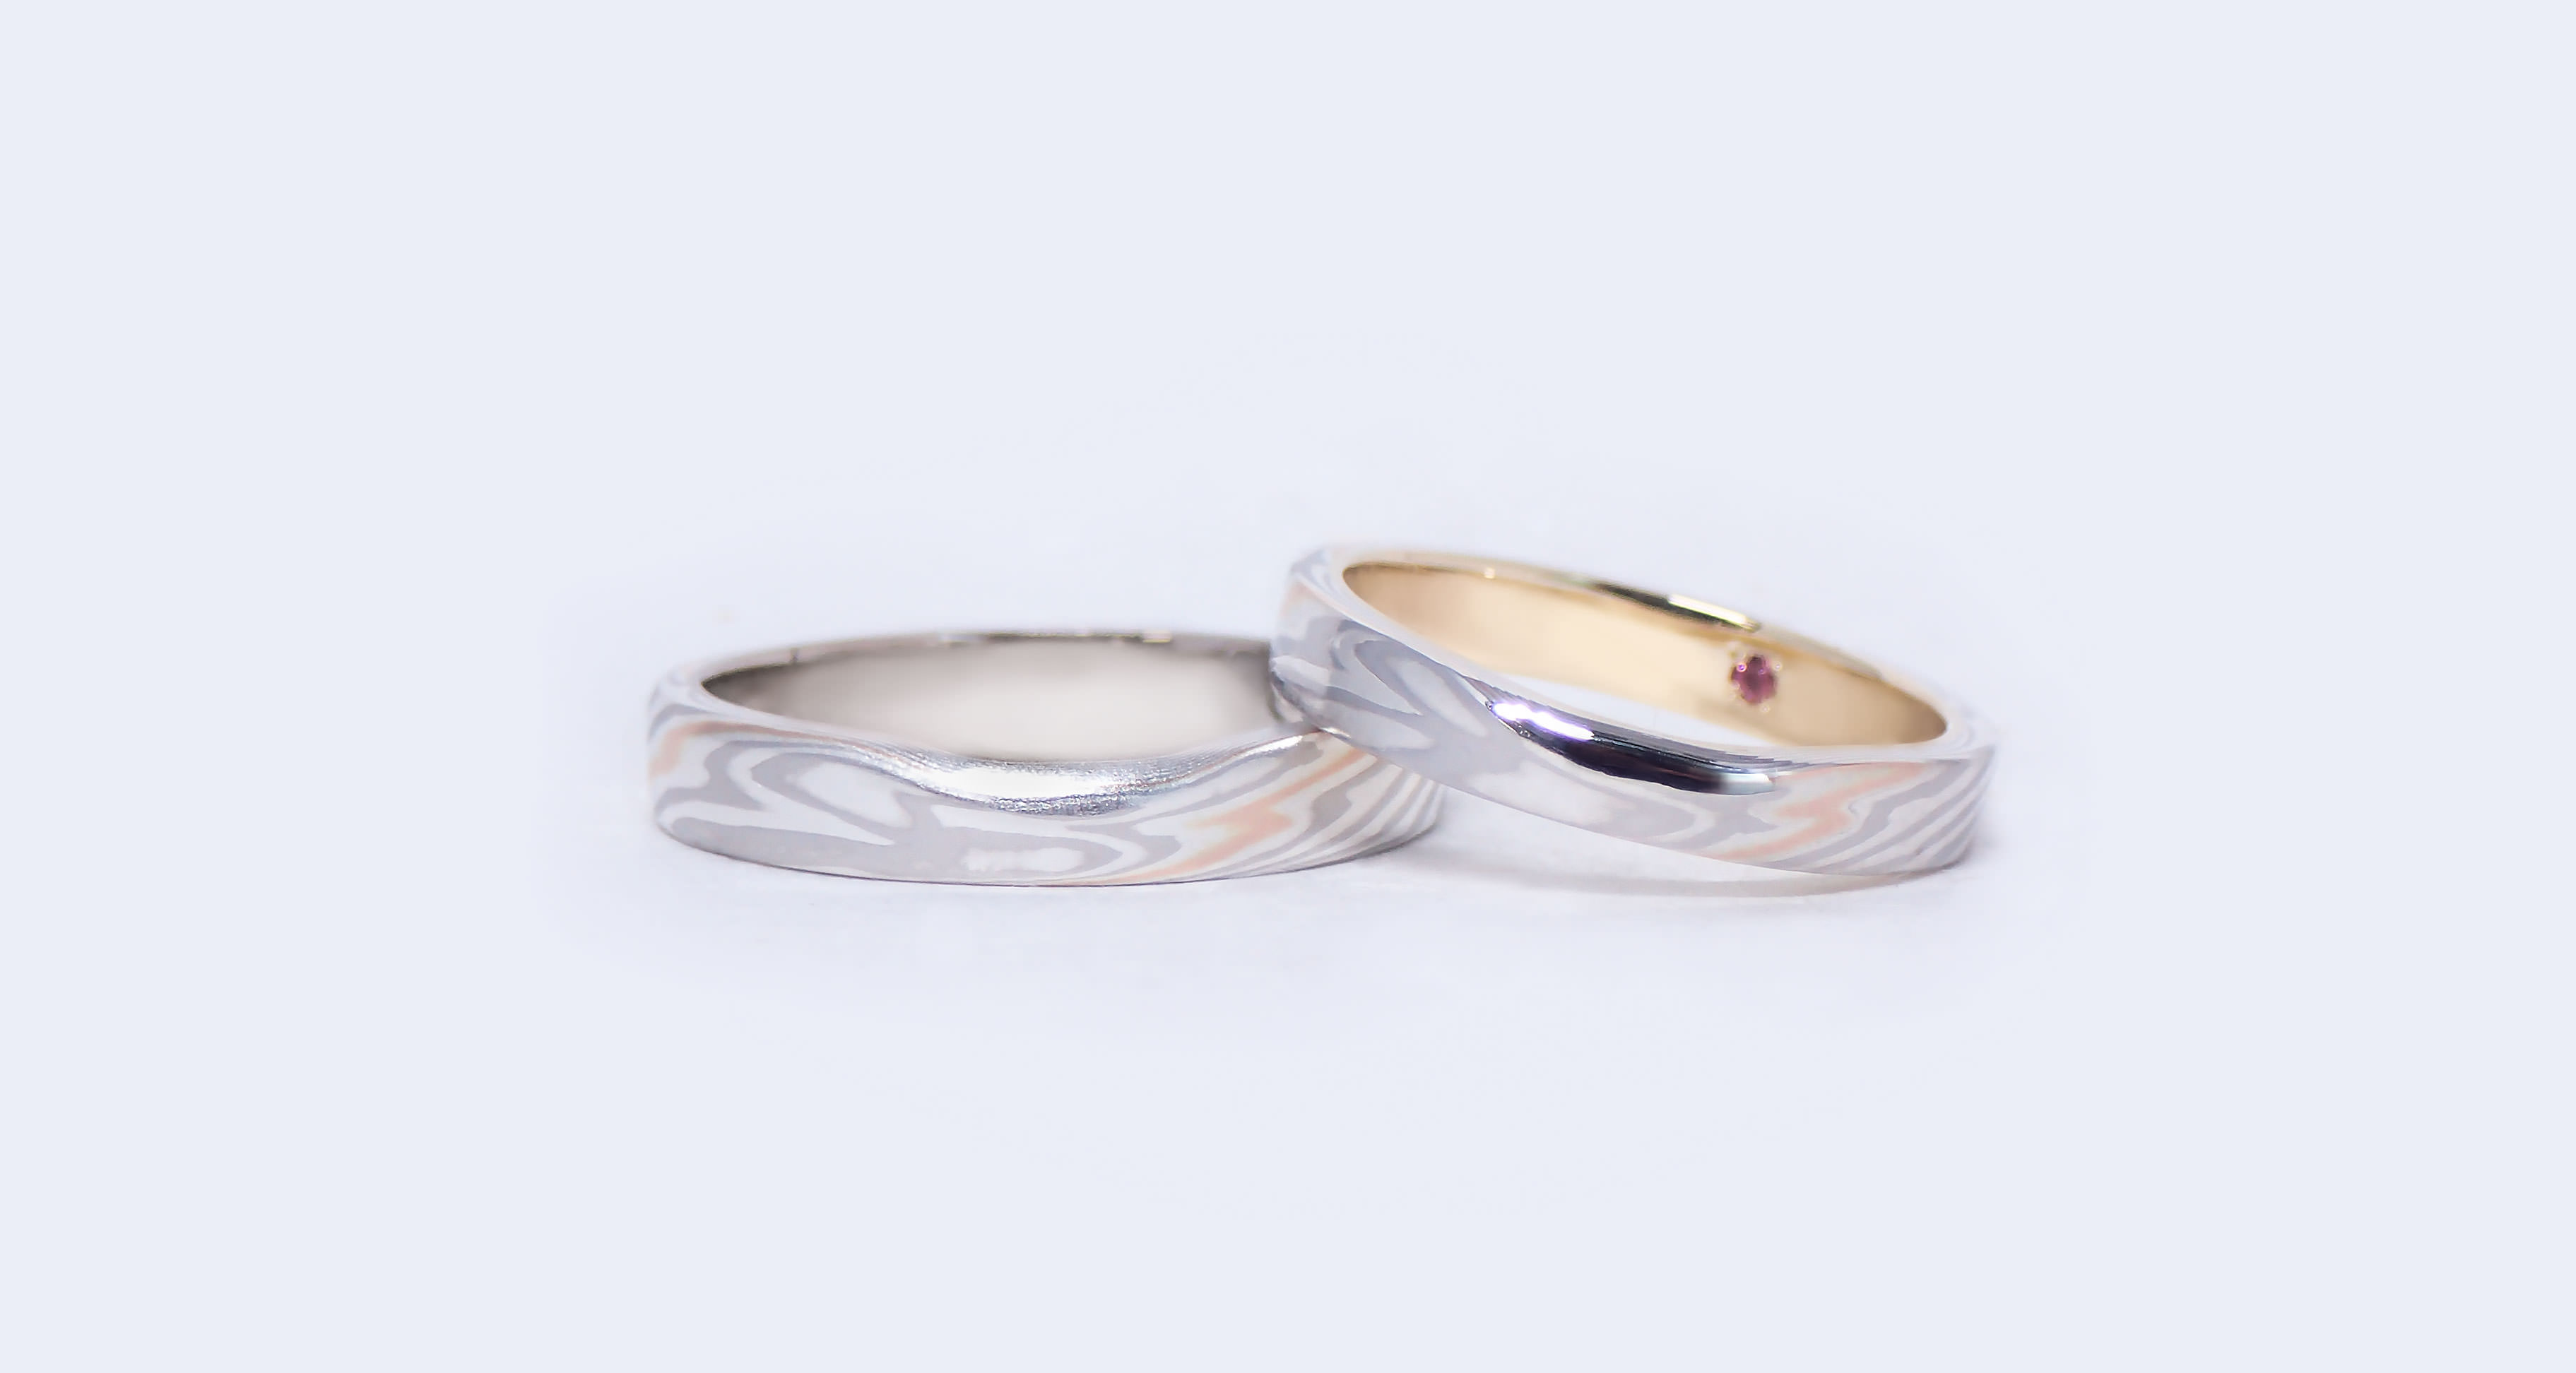 結婚指輪・婚約指輪素材選び方 | 結婚指輪・婚約指輪の杢目金屋